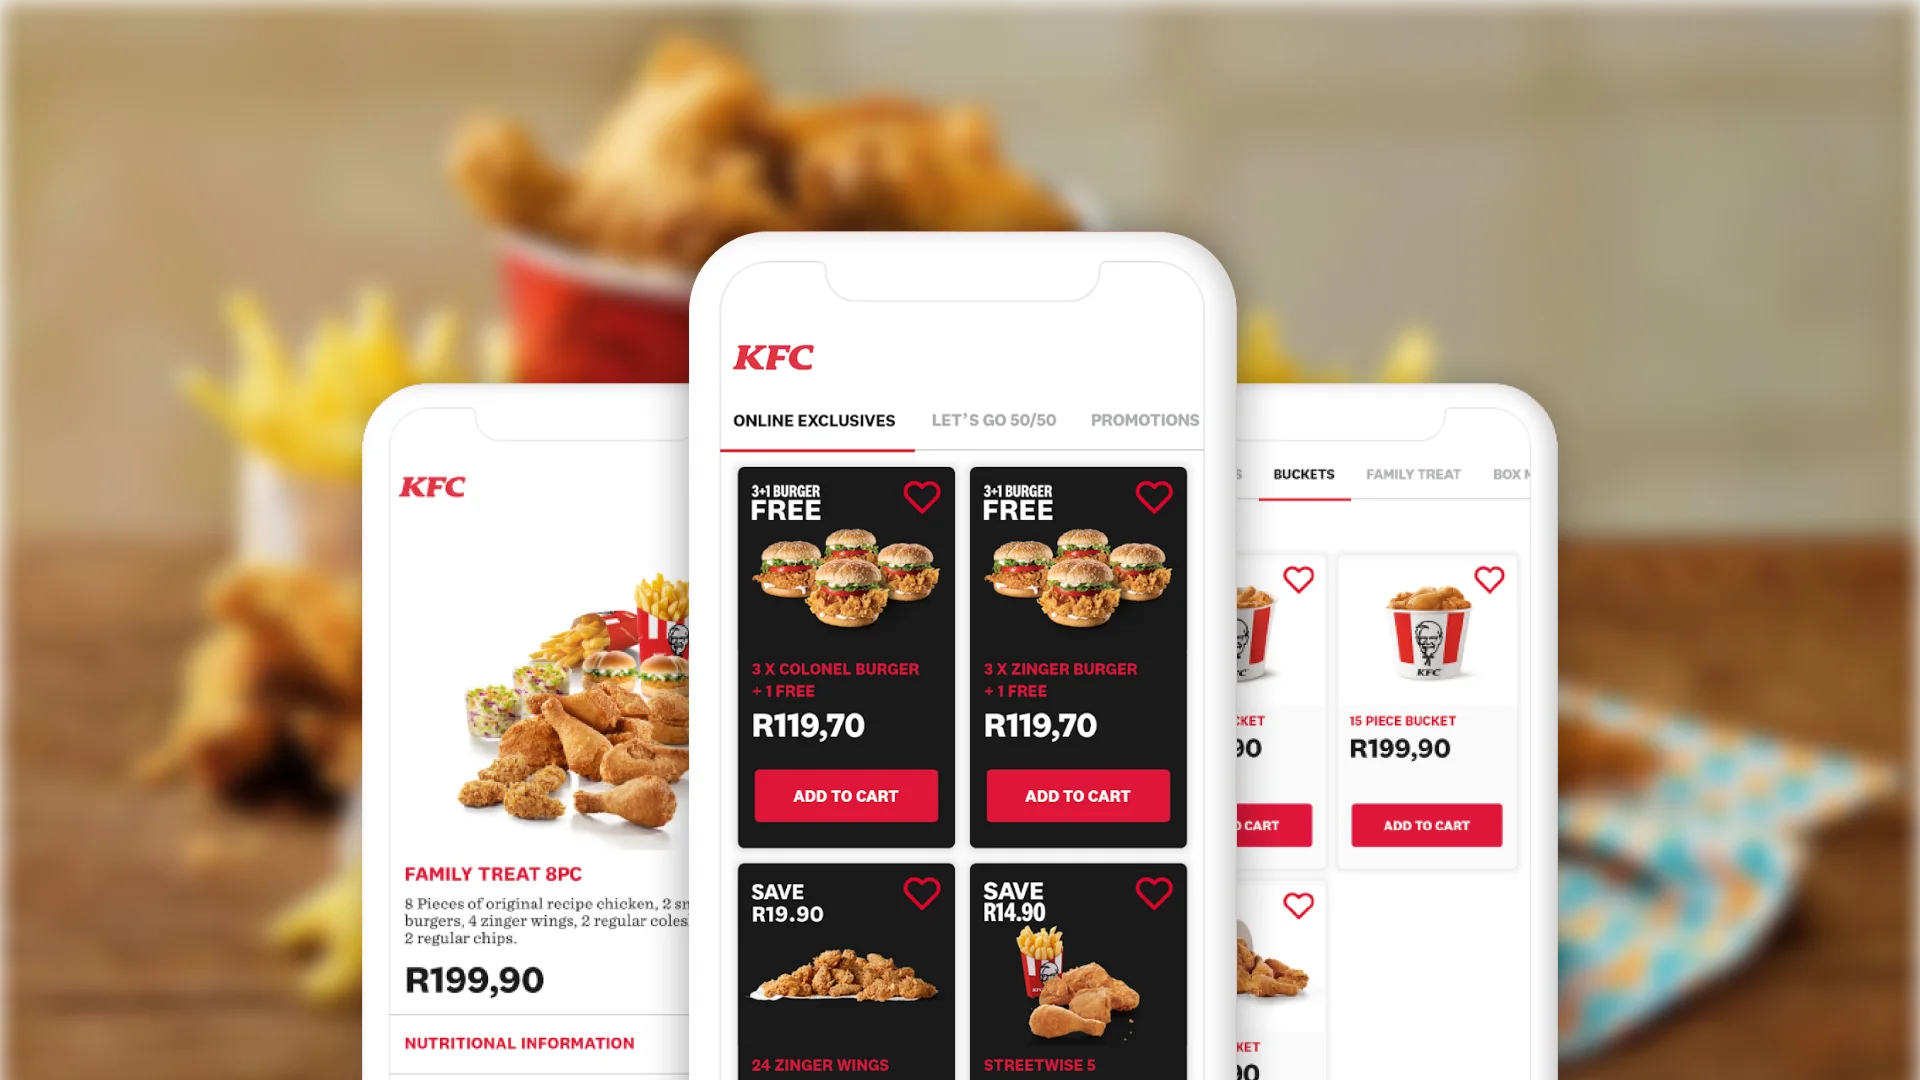 Food ordering app like KFC